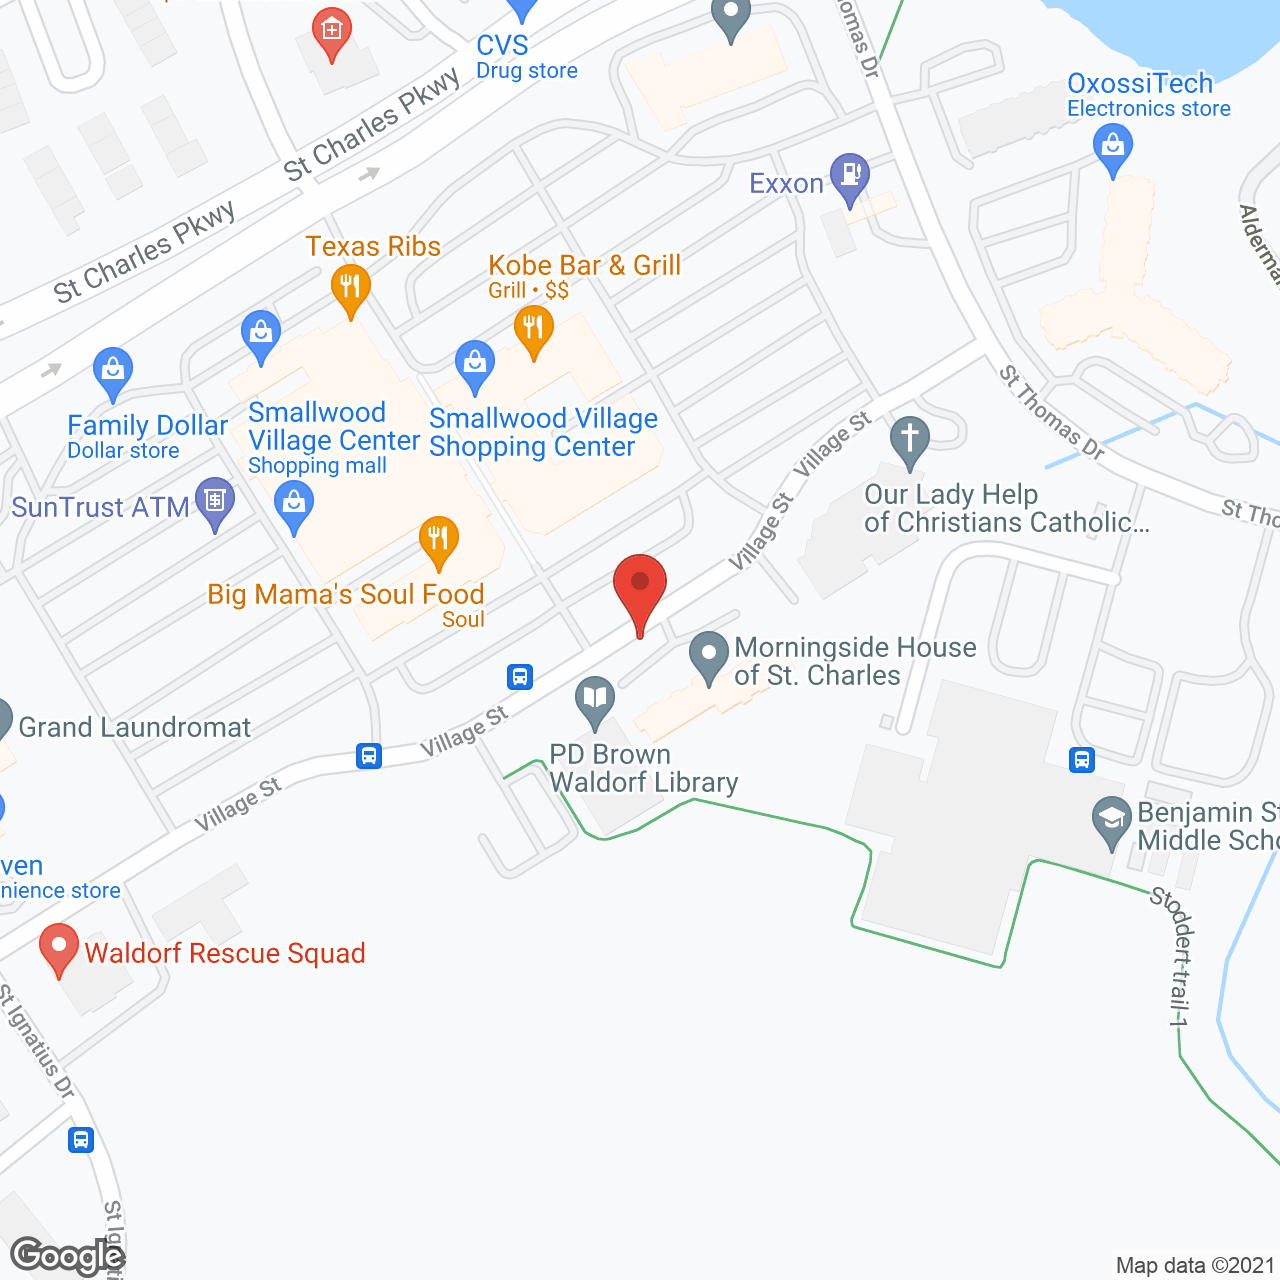 Morningside House of St Charles in google map